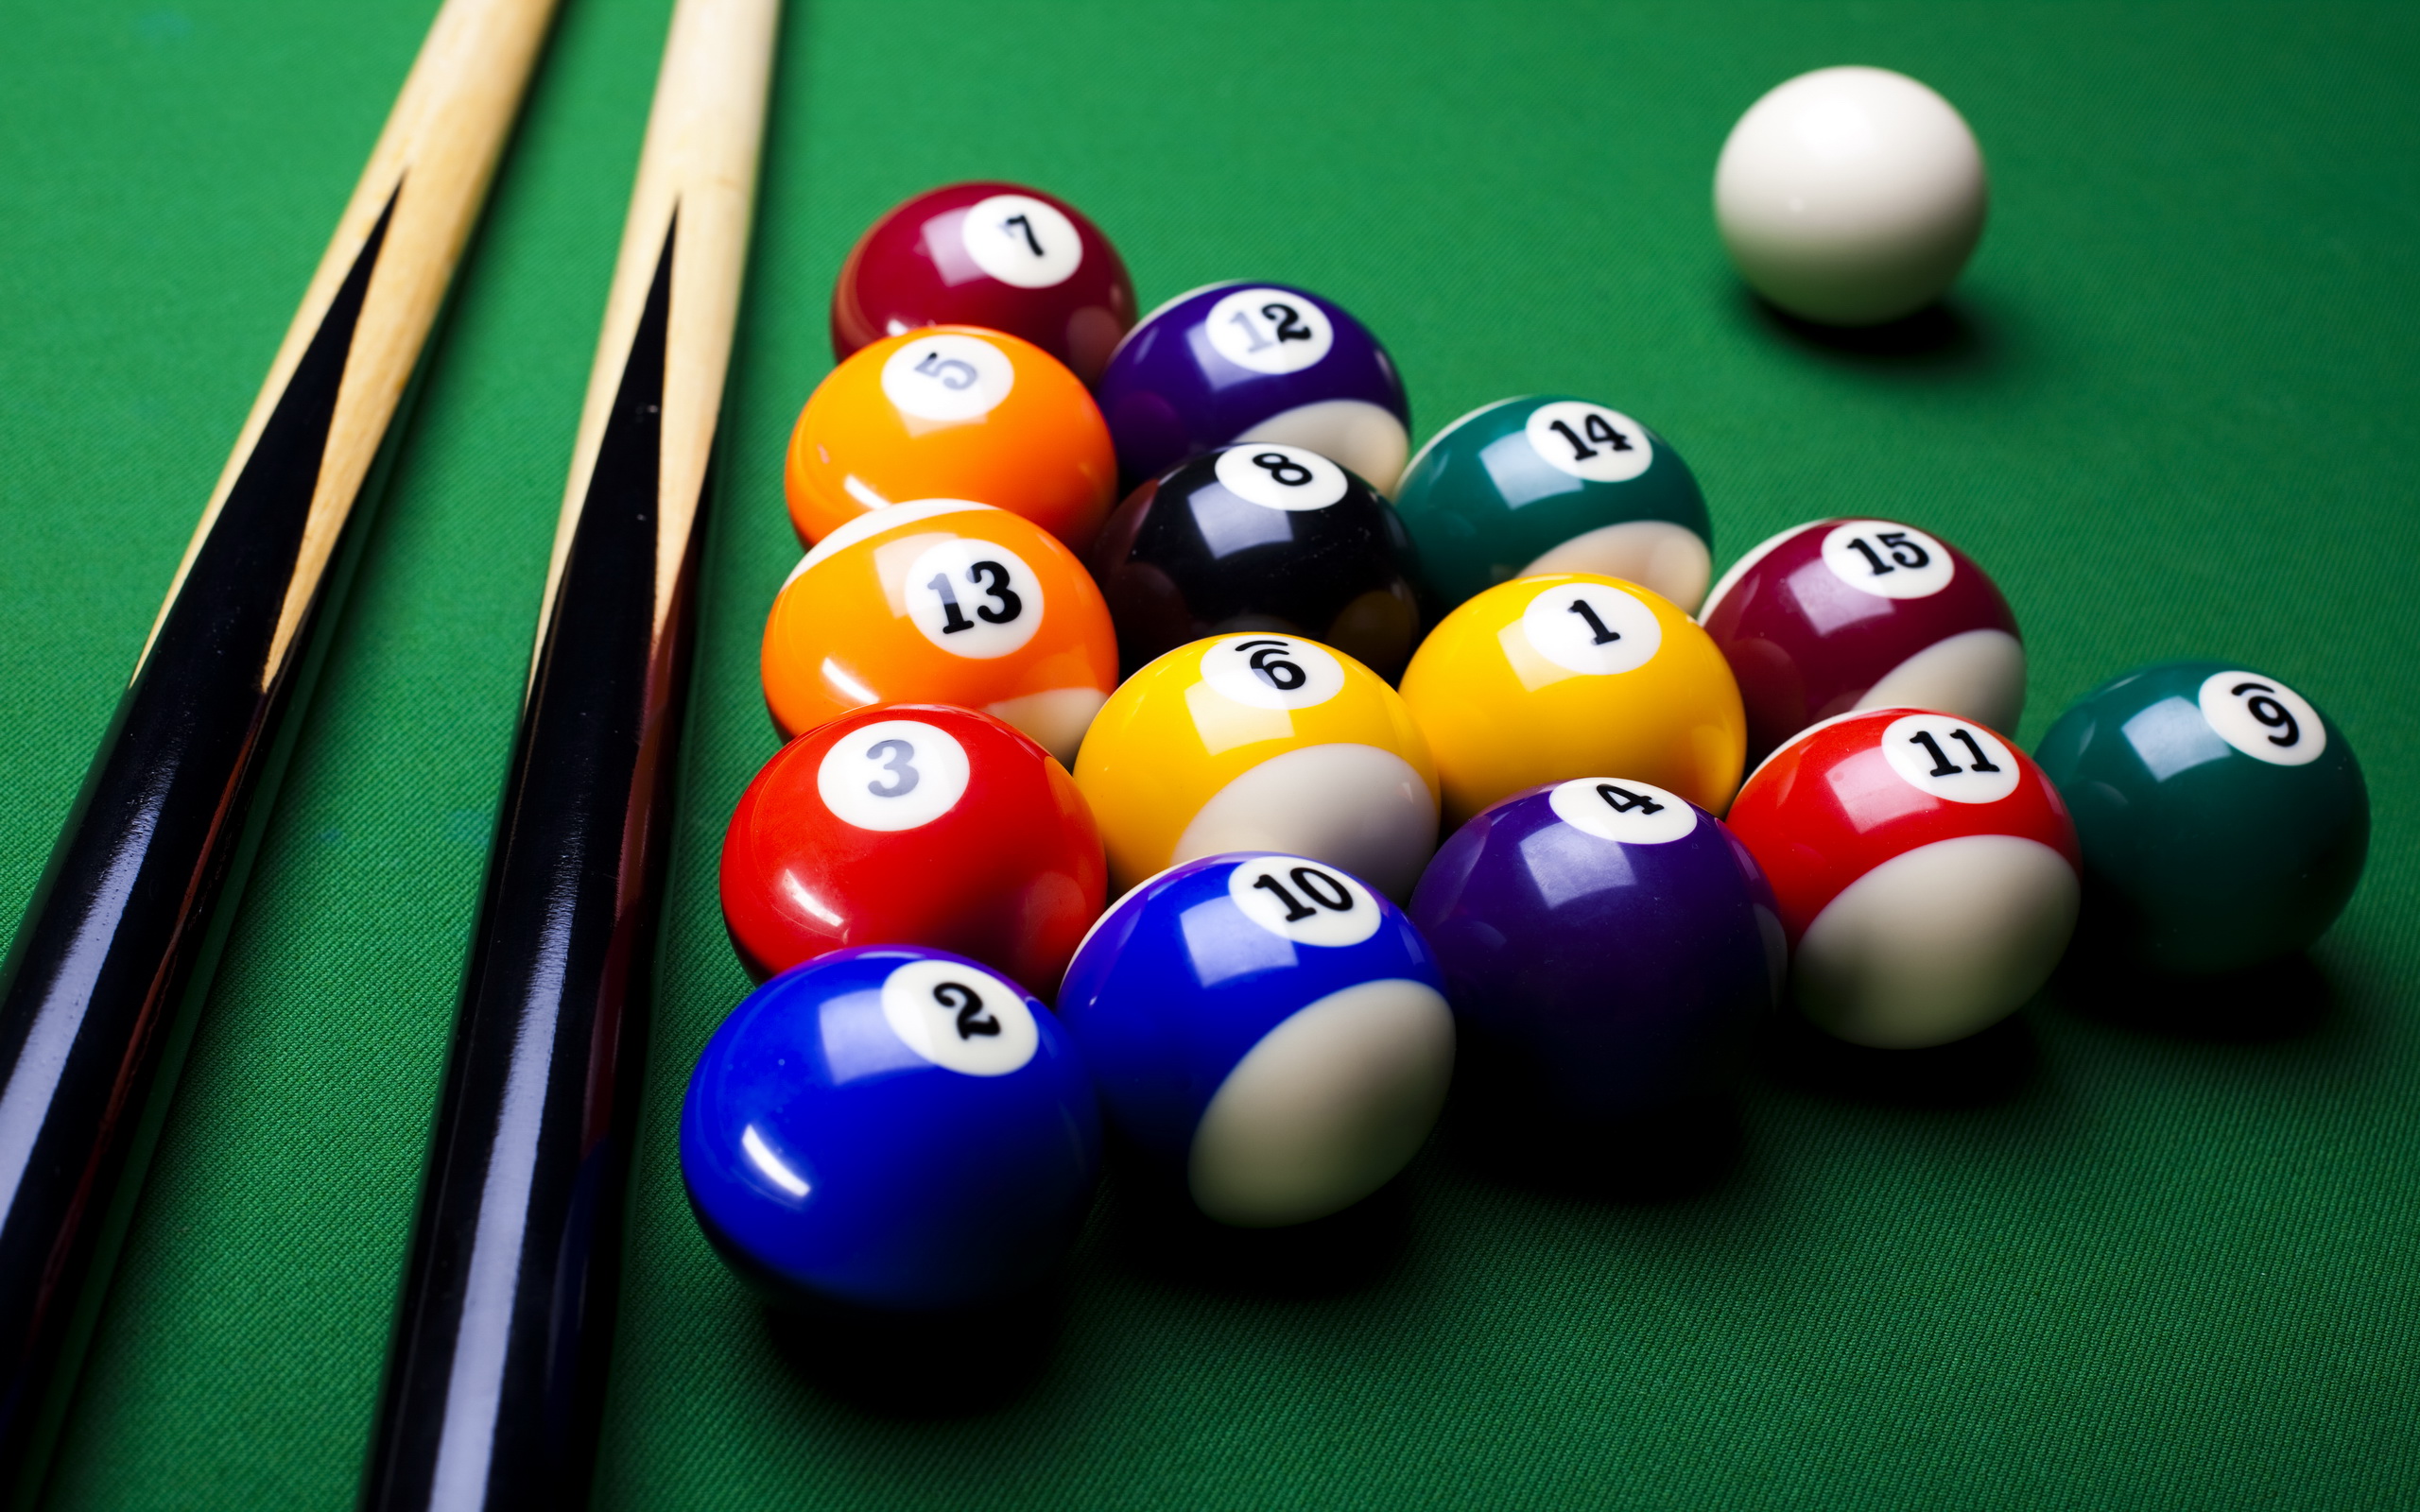 8 Ball Tournaments: Pool Game - Ứng dụng trên Google Play